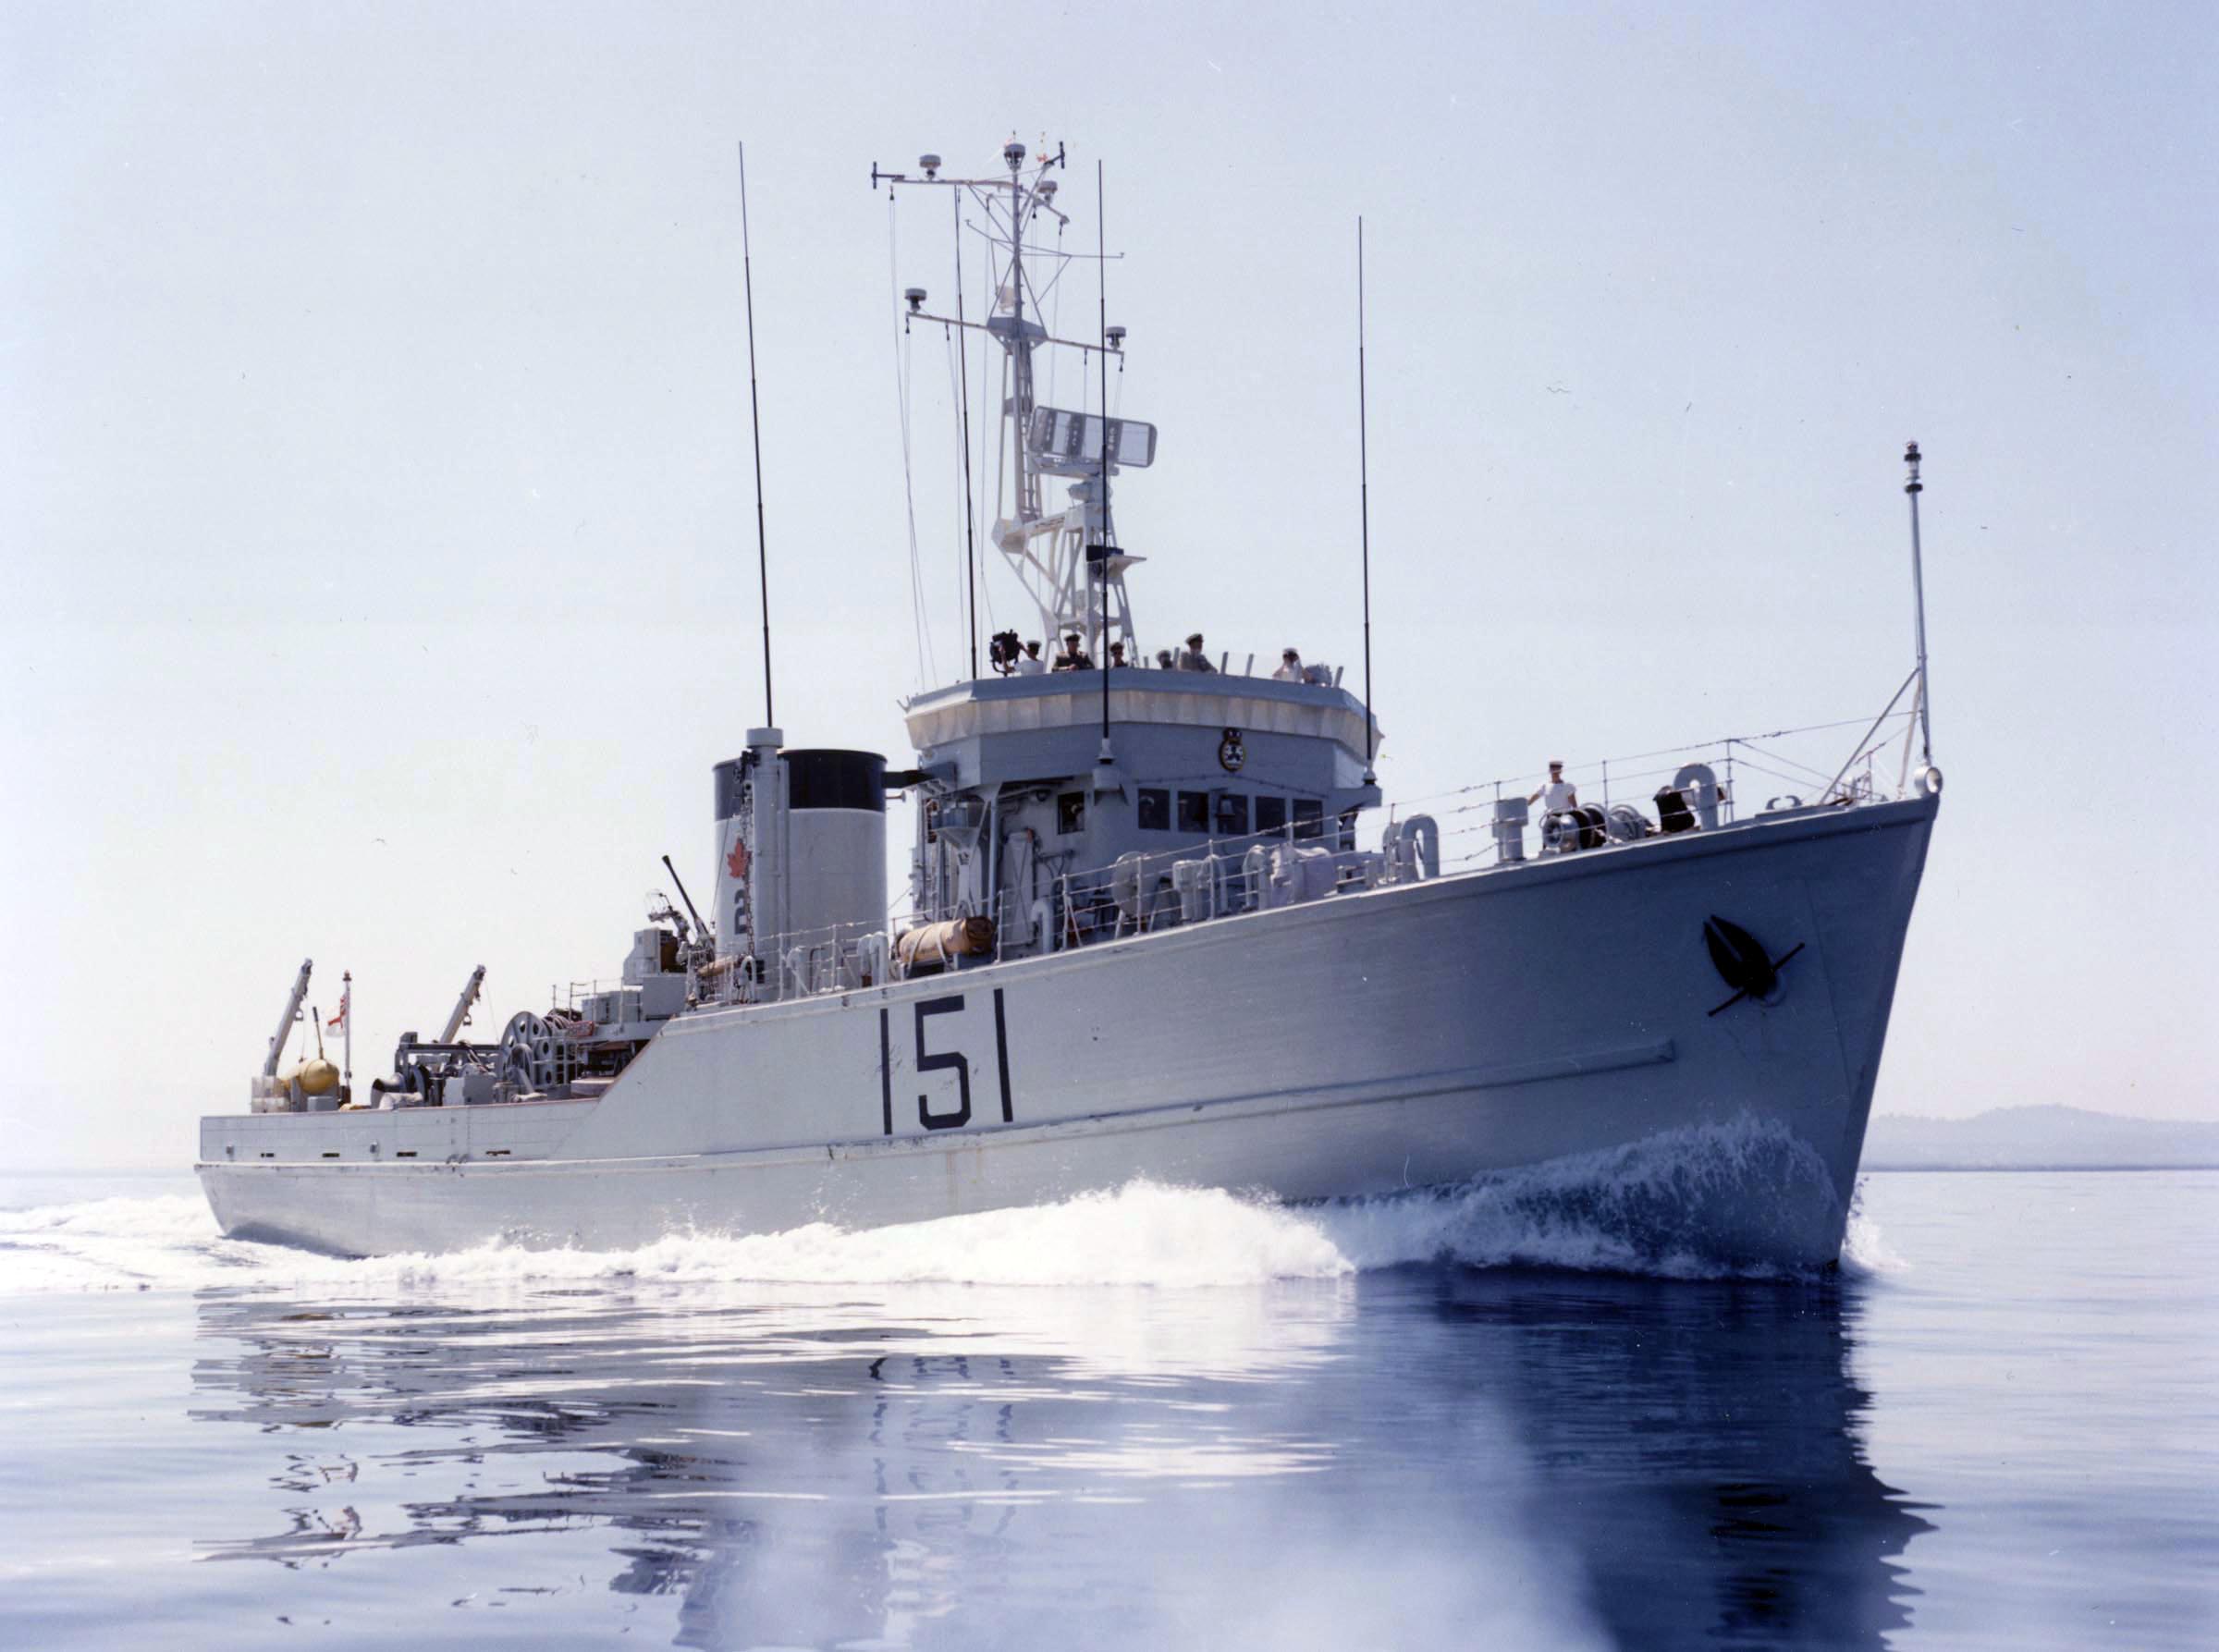 HMCS FORTUNE